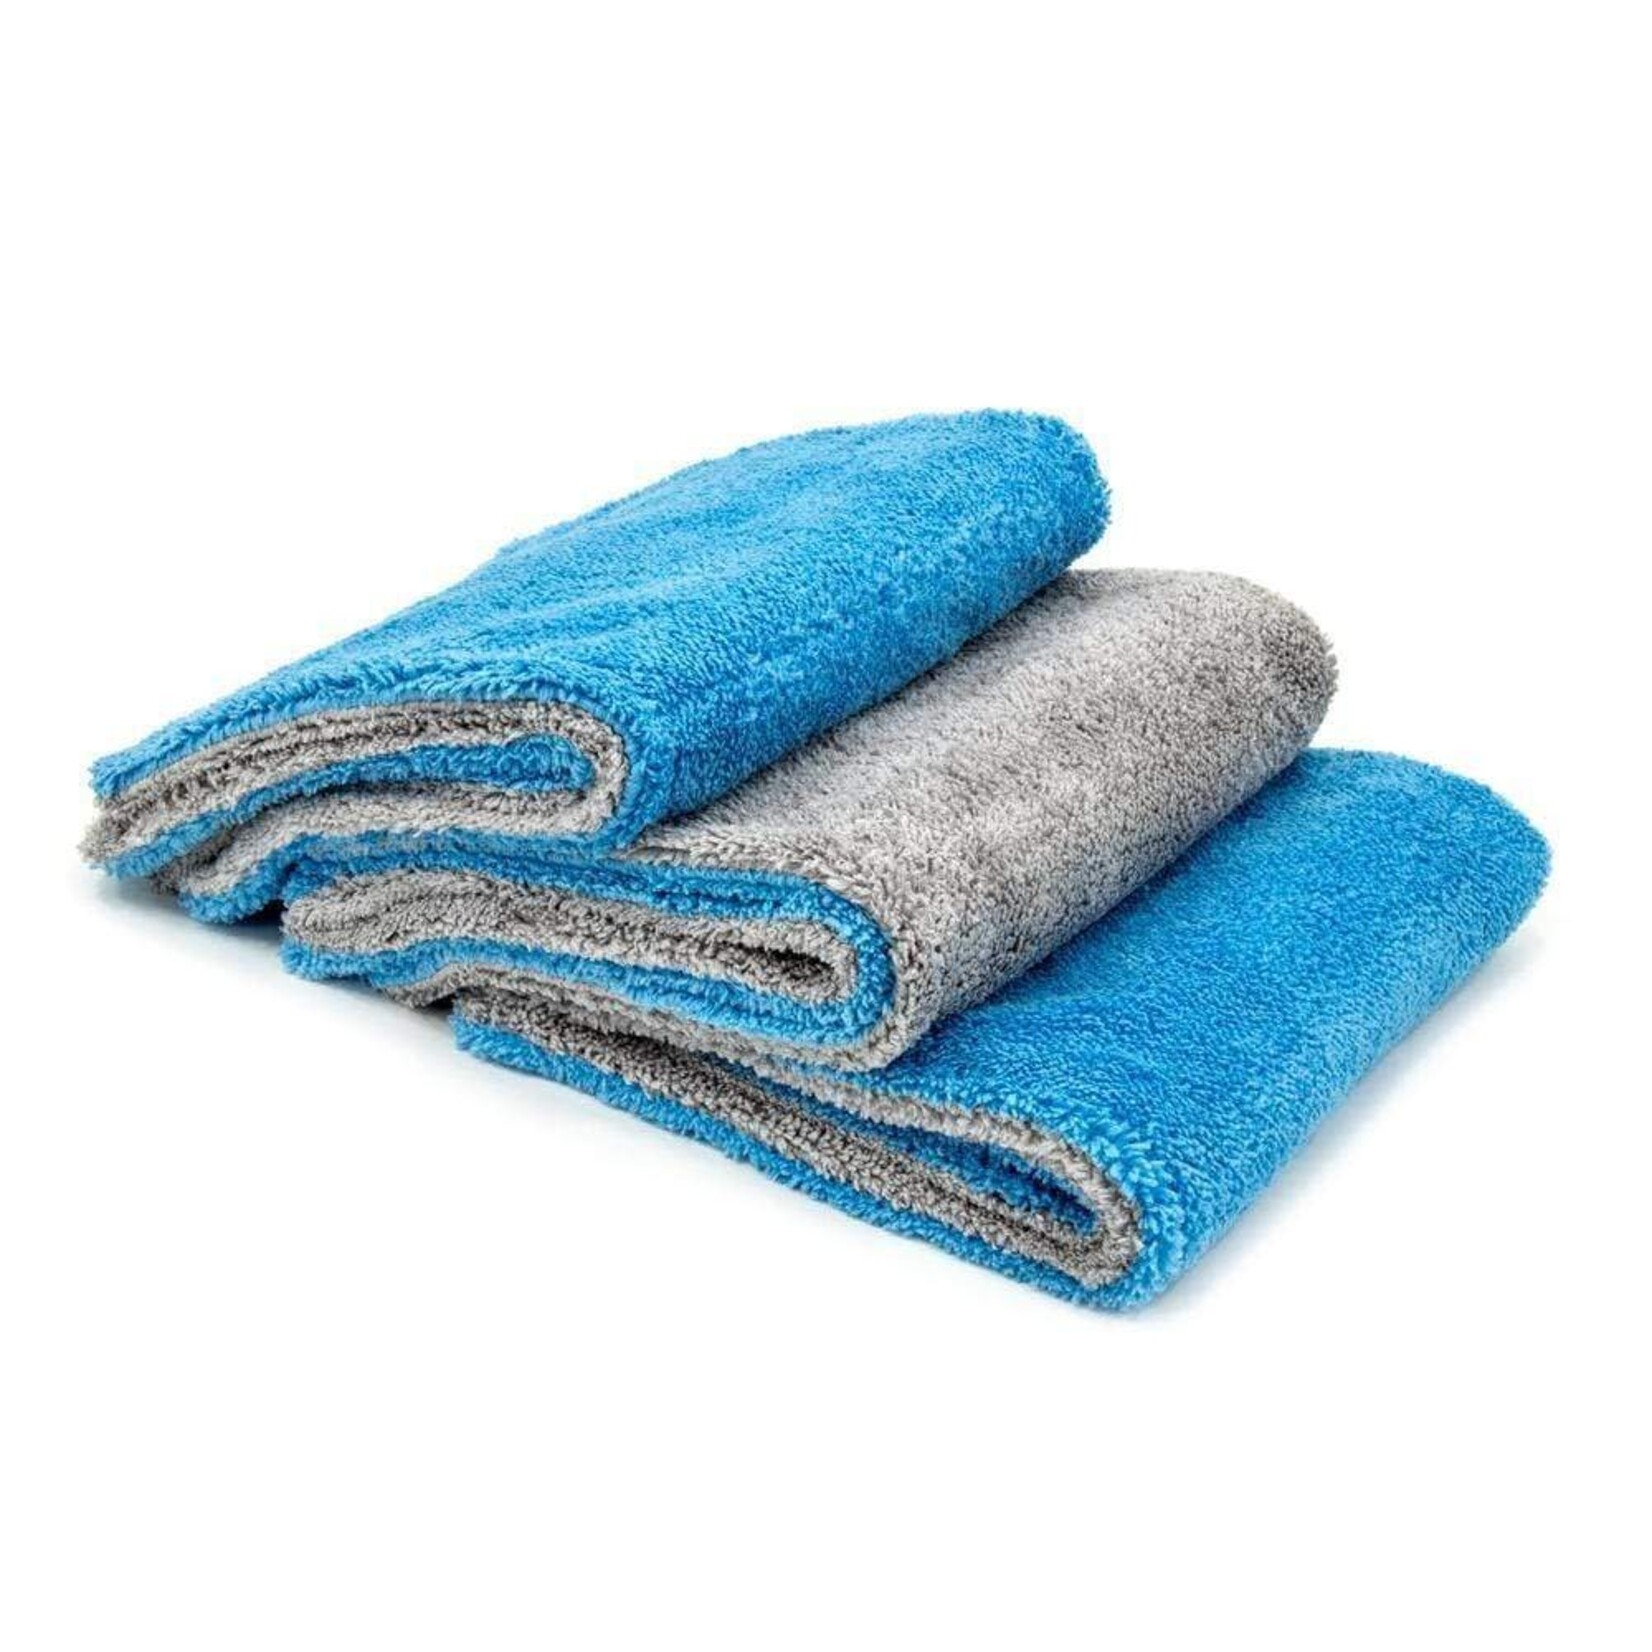 AutoFiber Autofiber - [Royal Plush] Double Pile Towel 700GSM 3PCK (Blue)